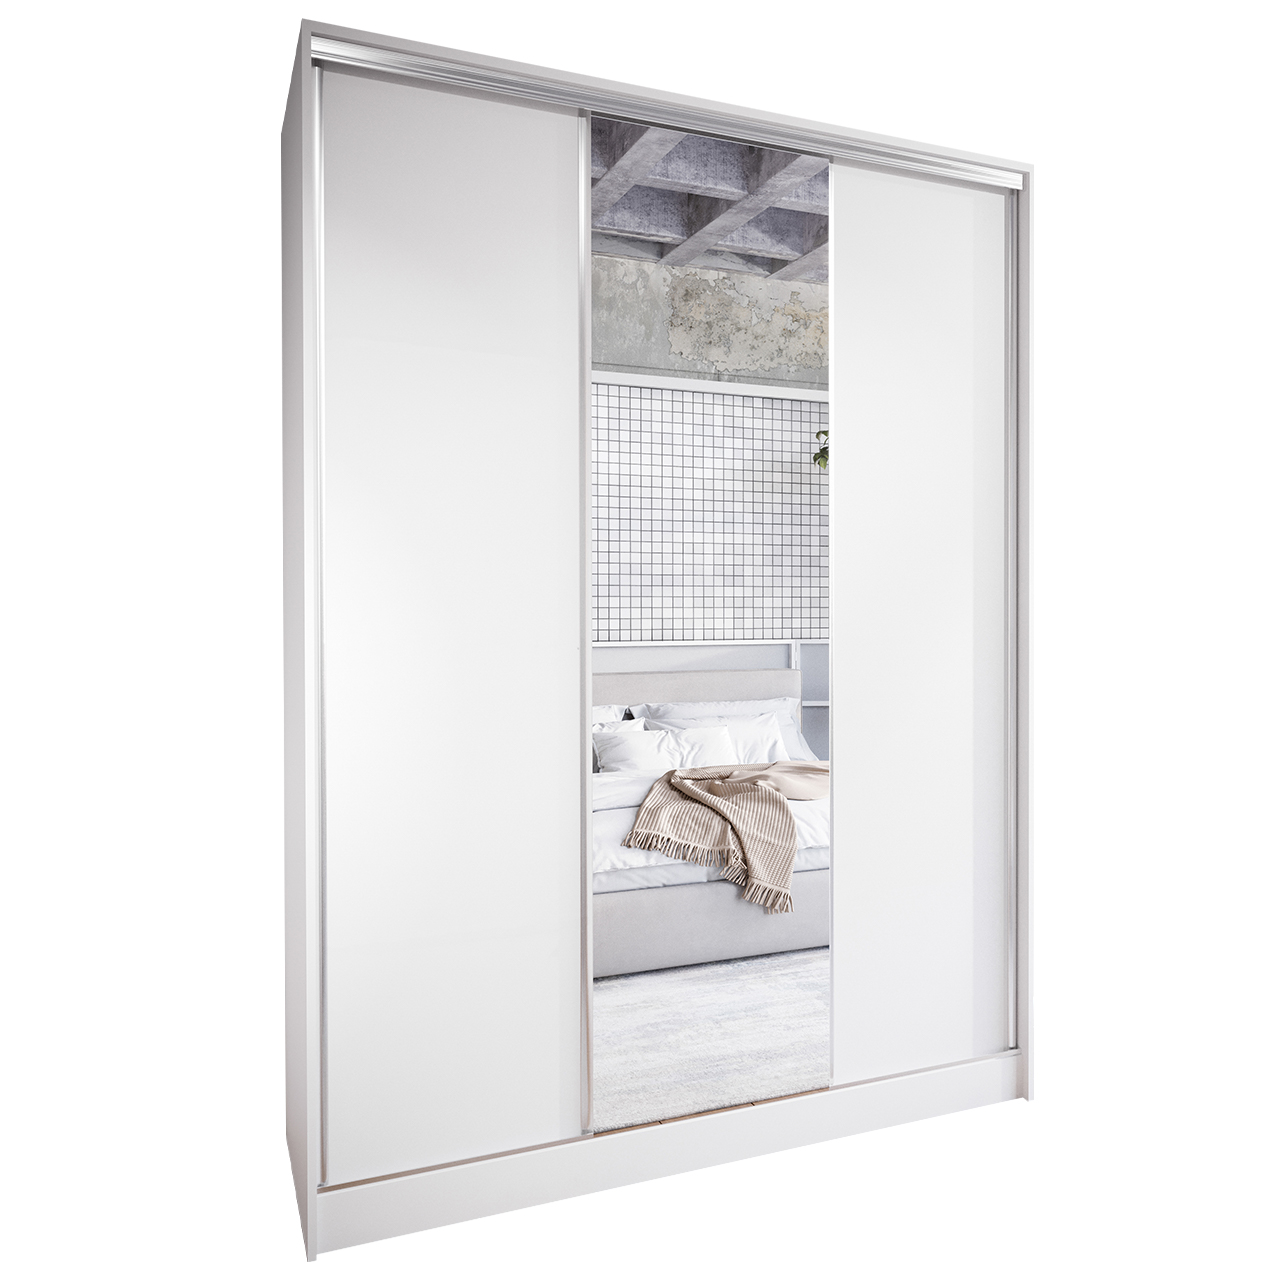 Sliding Wardrobe with Mirror CORINA A 150 white